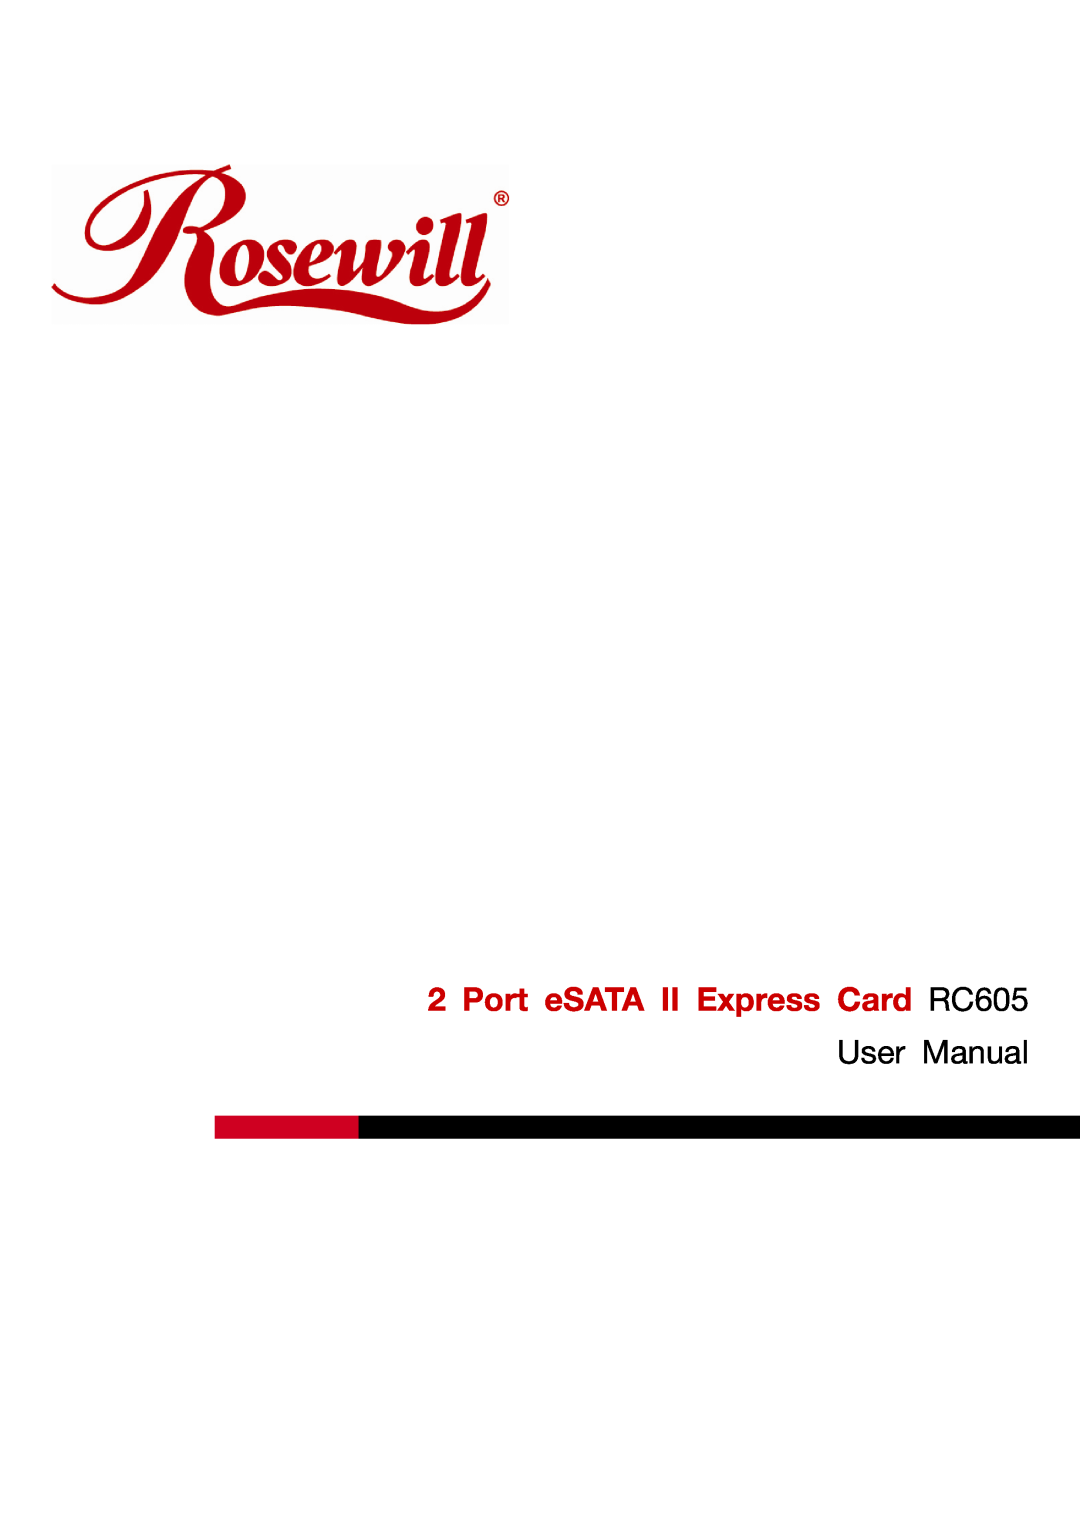 Rosewill user manual Port eSATA II Express Card RC605, User Manual 